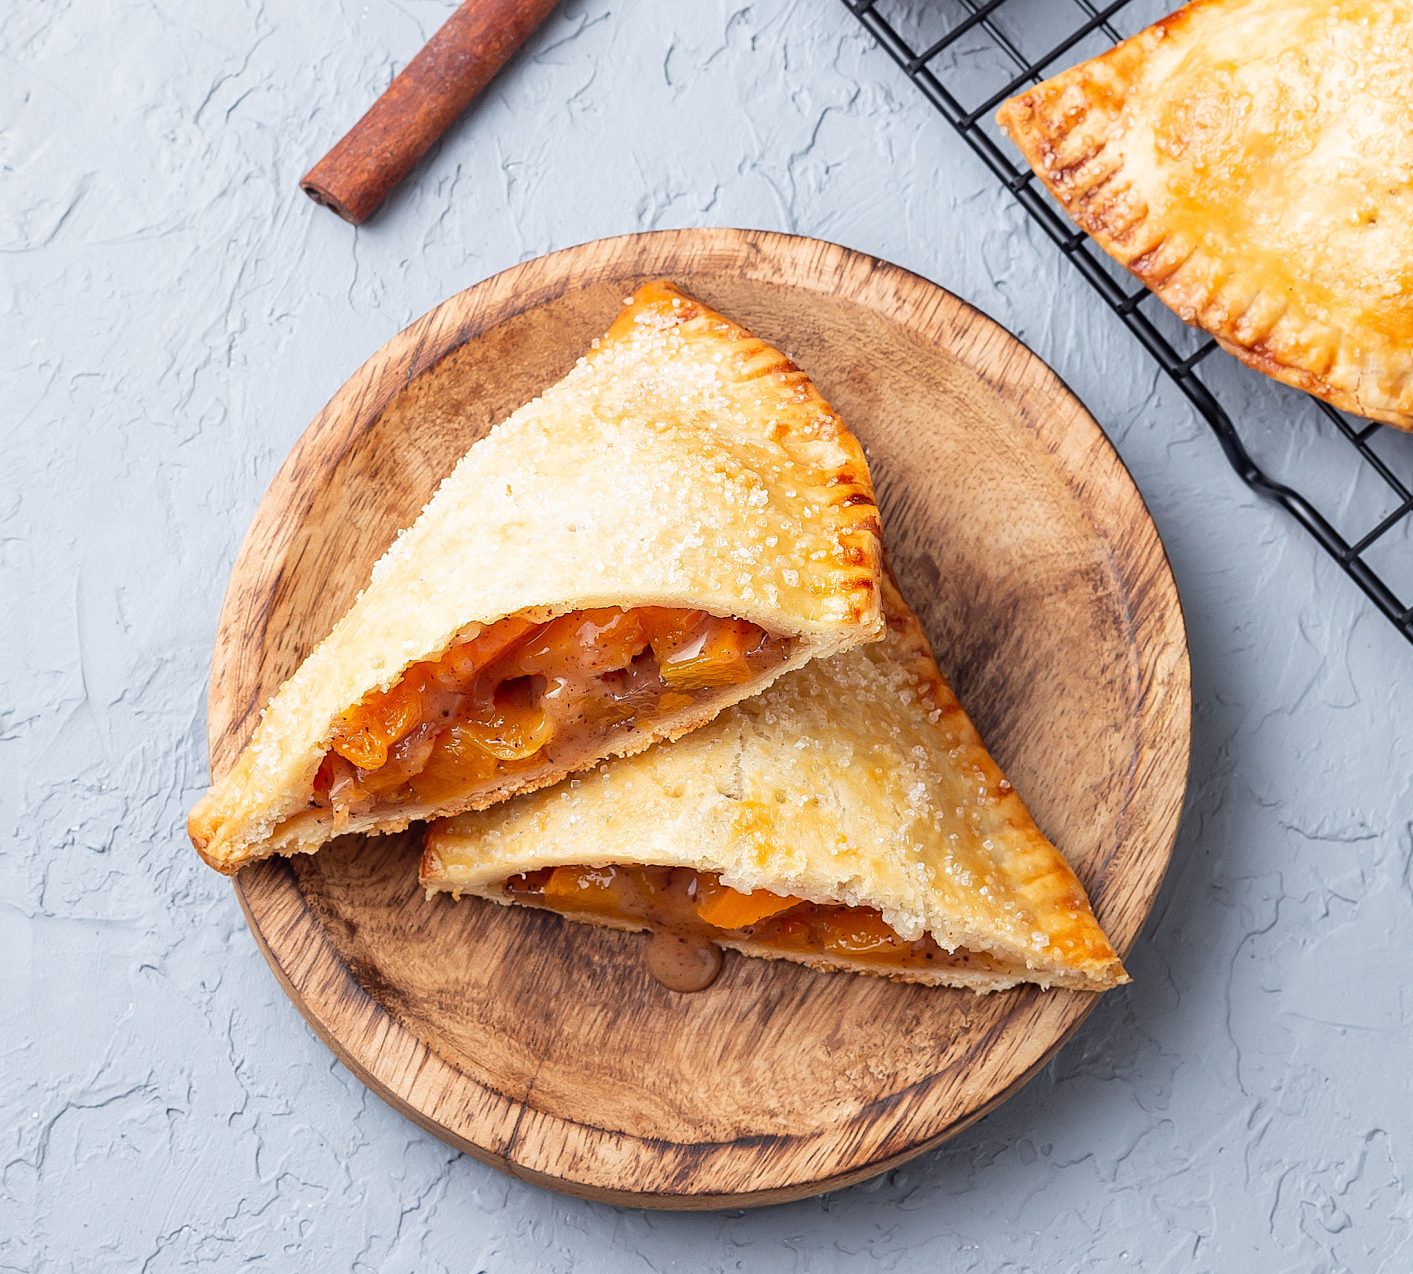 Easy recipe for peach empanadas